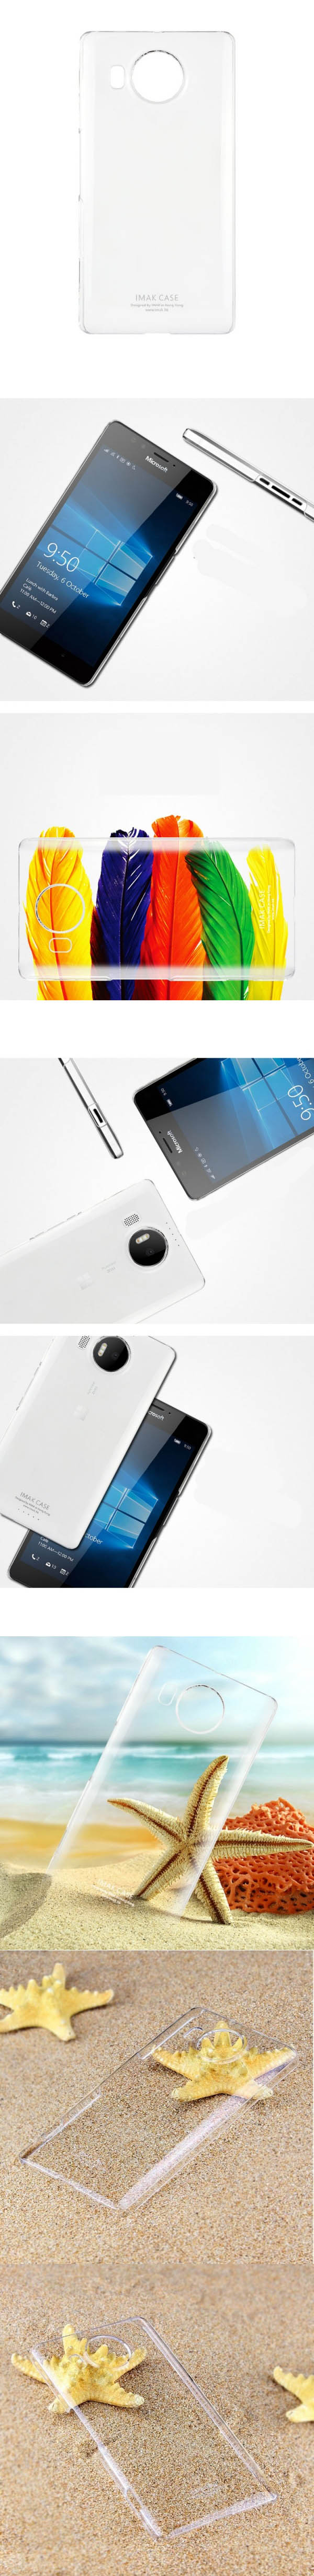 Ốp lưng Lumia 950 XL imak Nano trong suốt 4